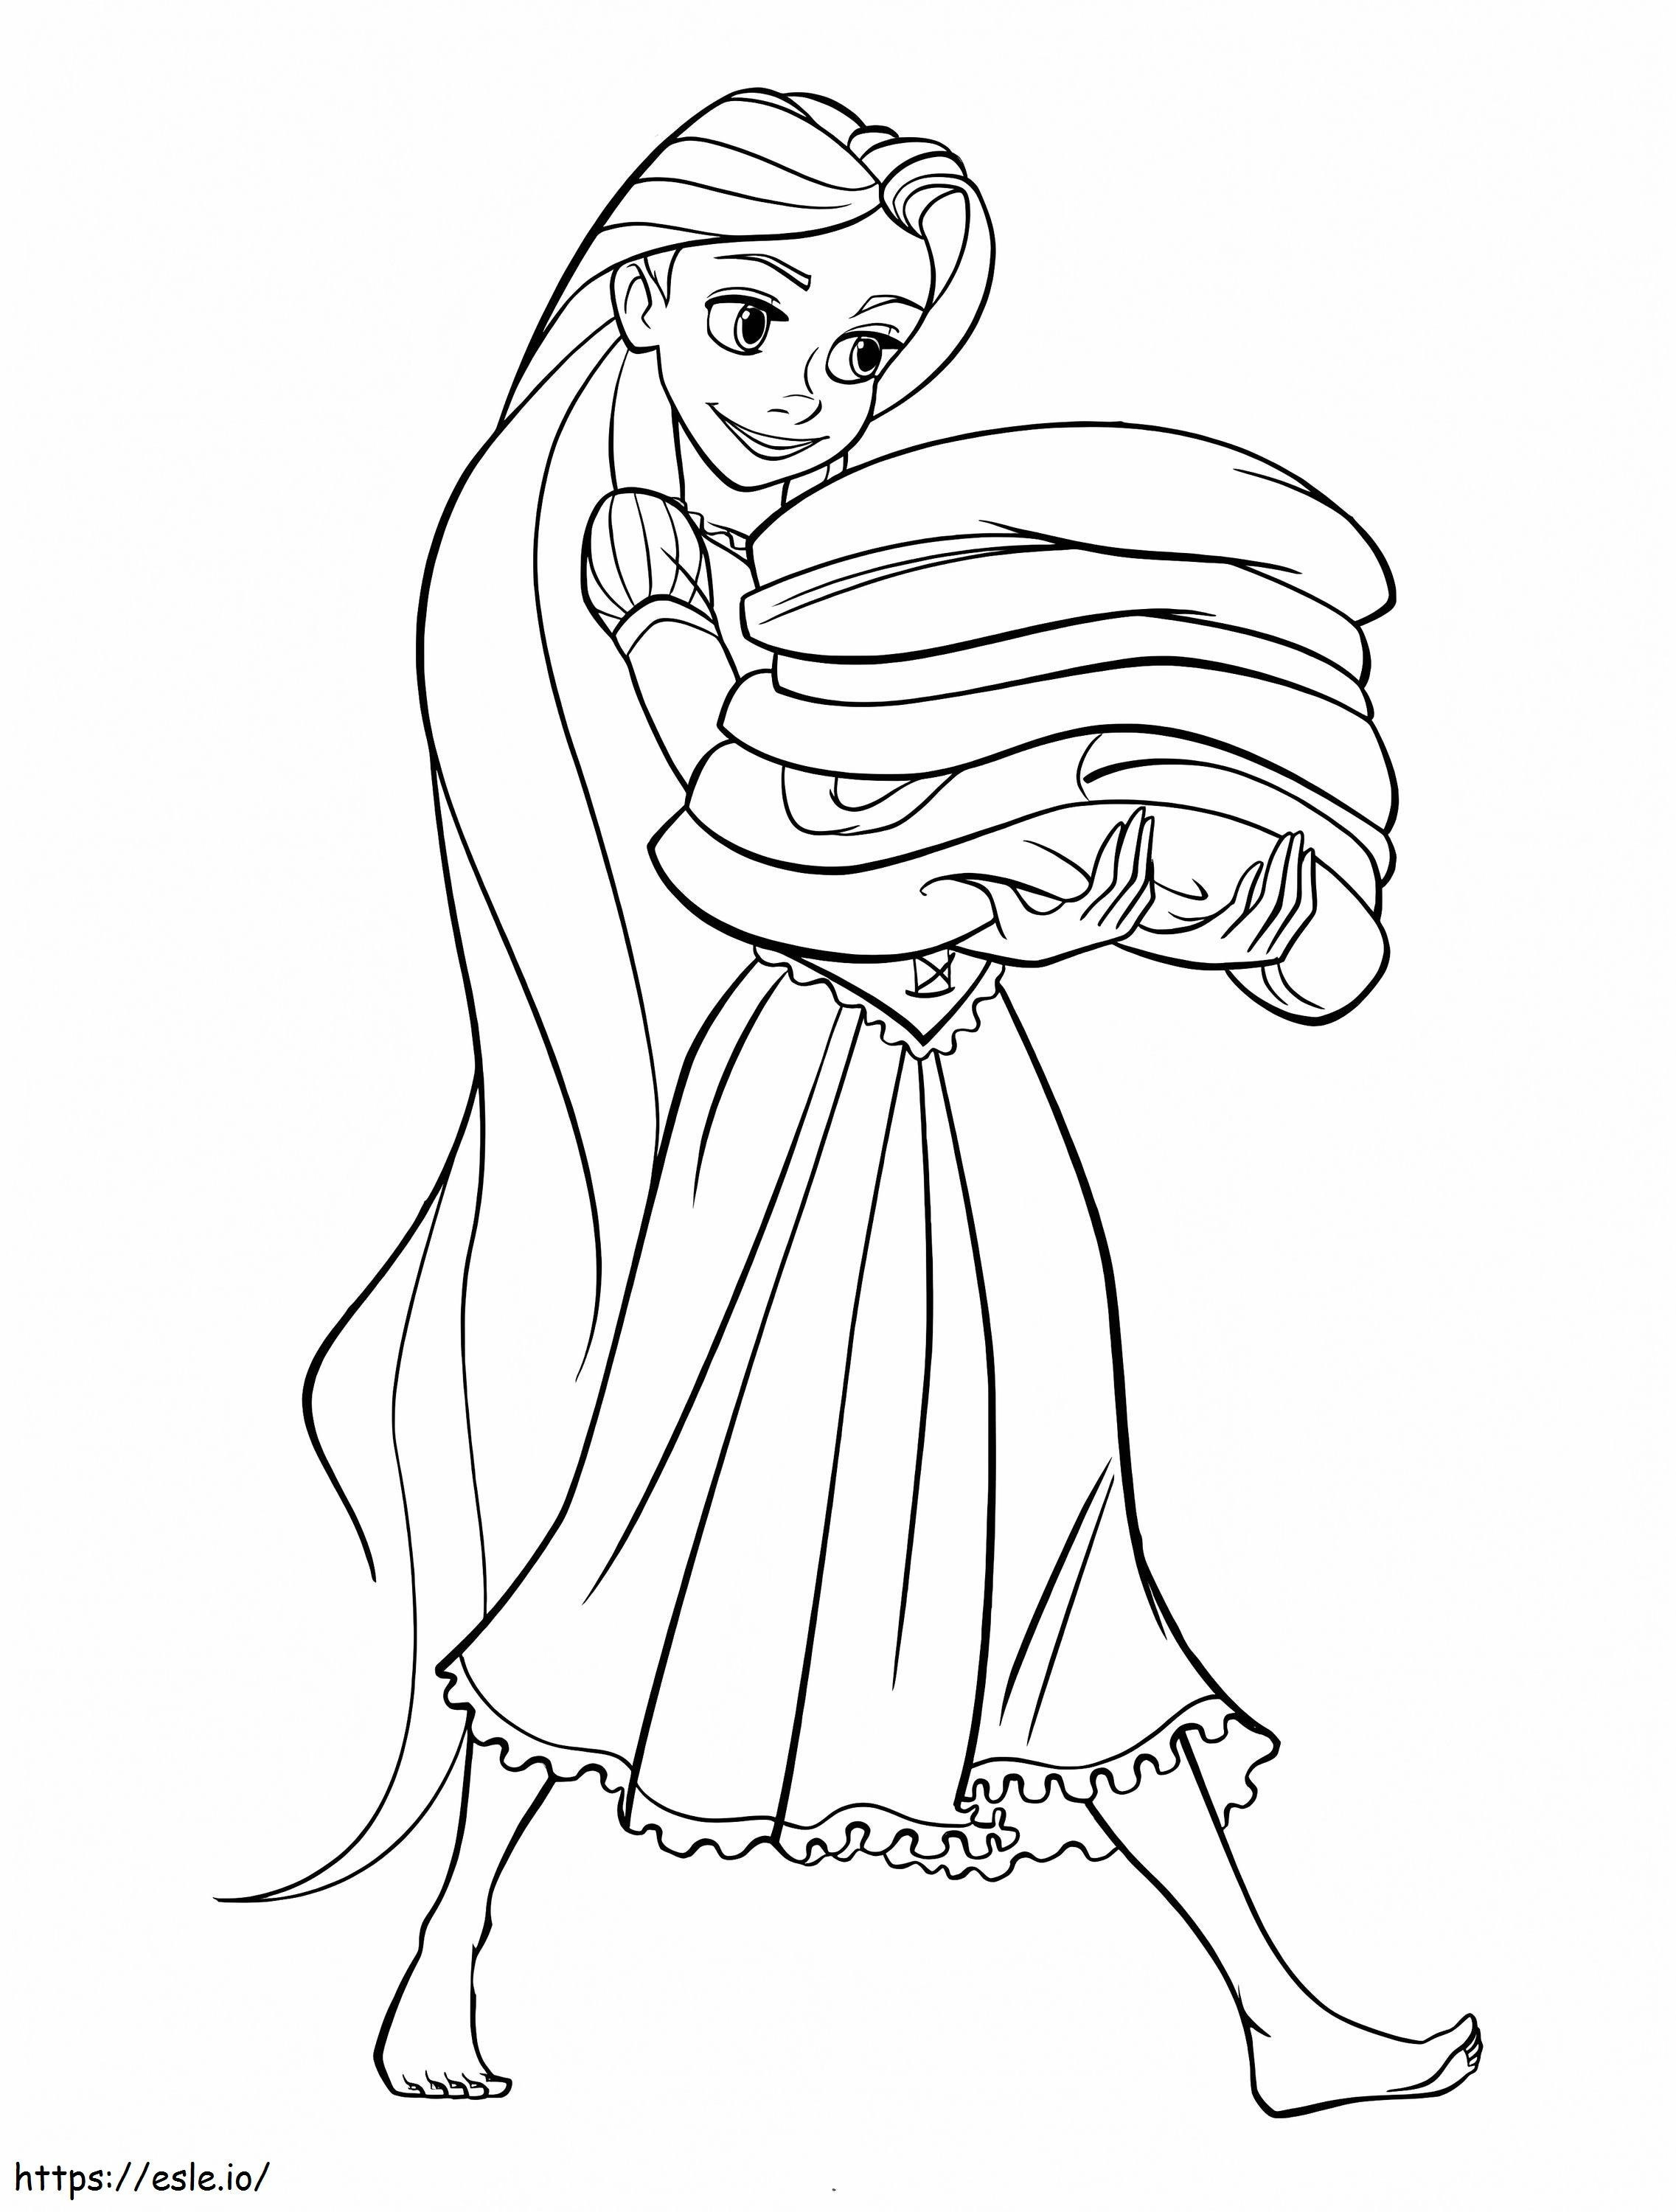 La principessa Rapunzel sta pulendo da colorare